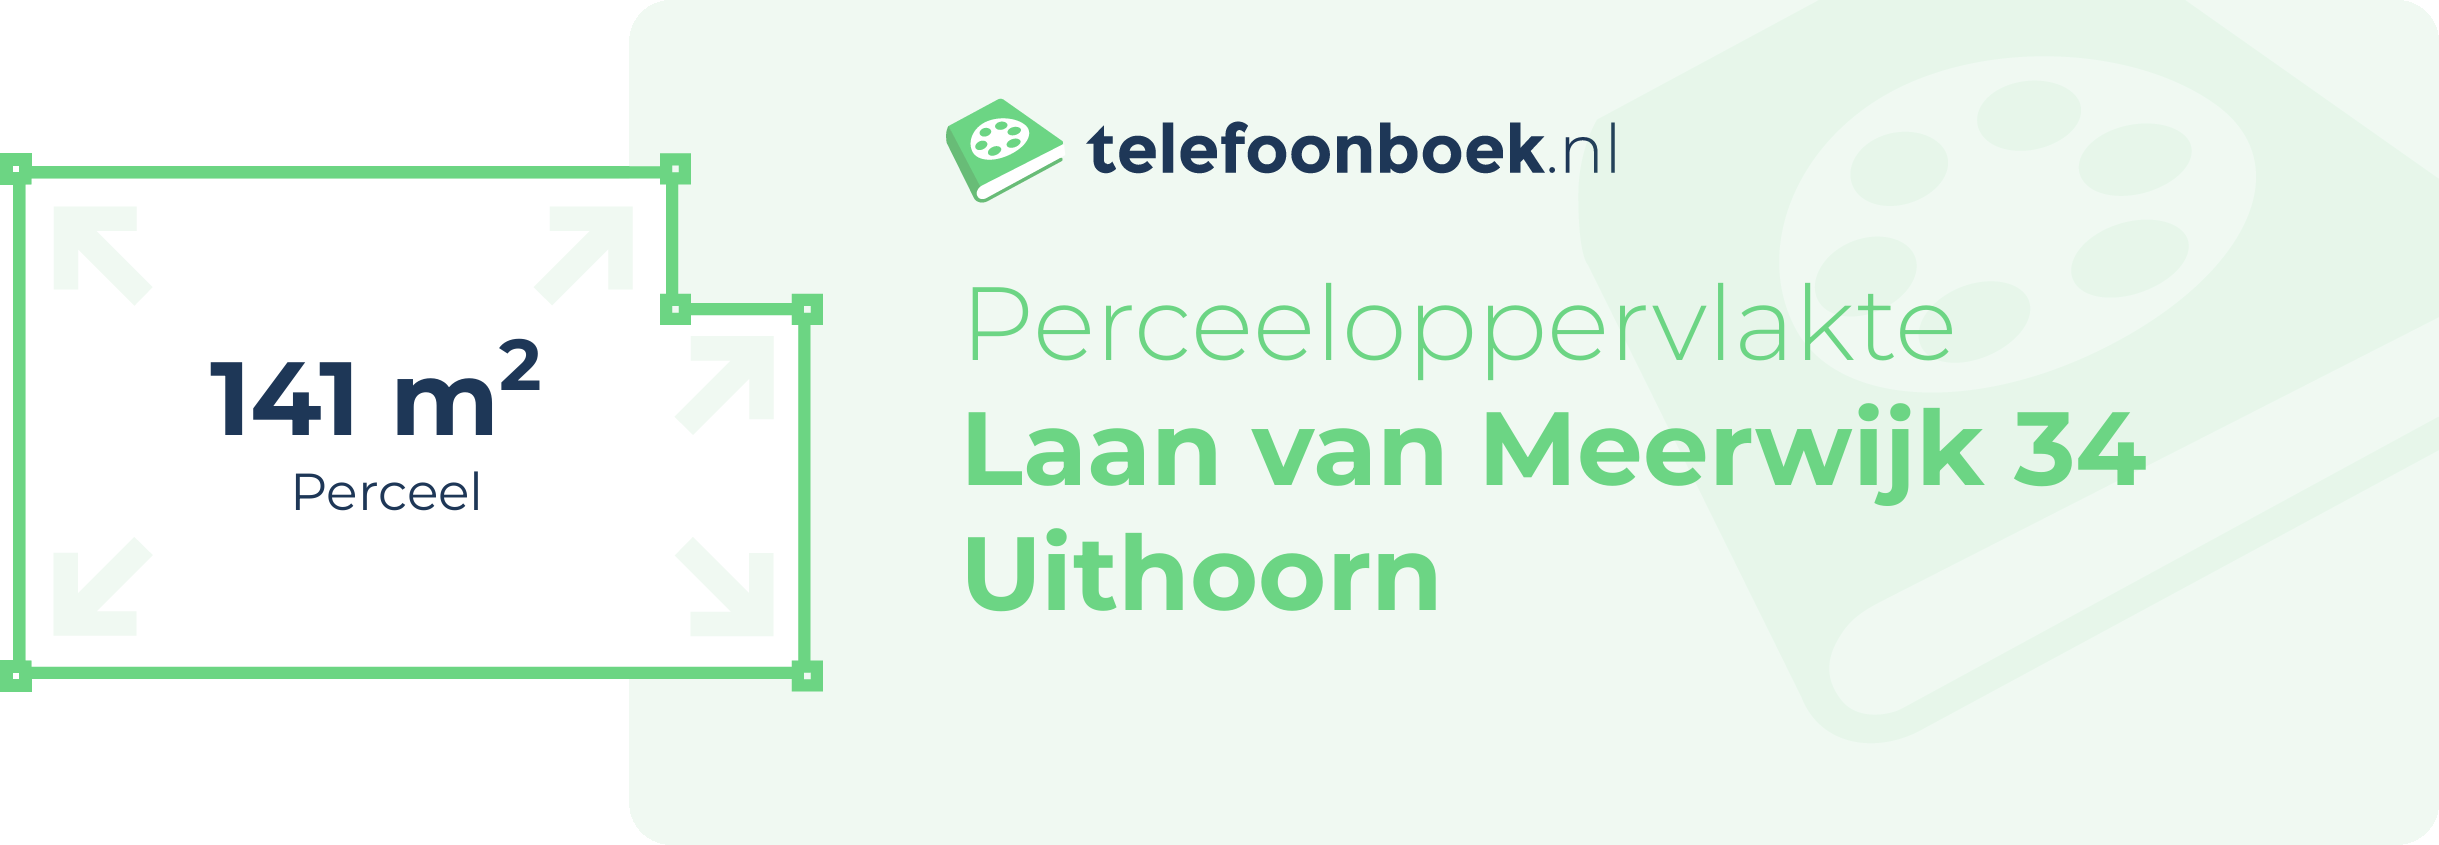 Perceeloppervlakte Laan Van Meerwijk 34 Uithoorn